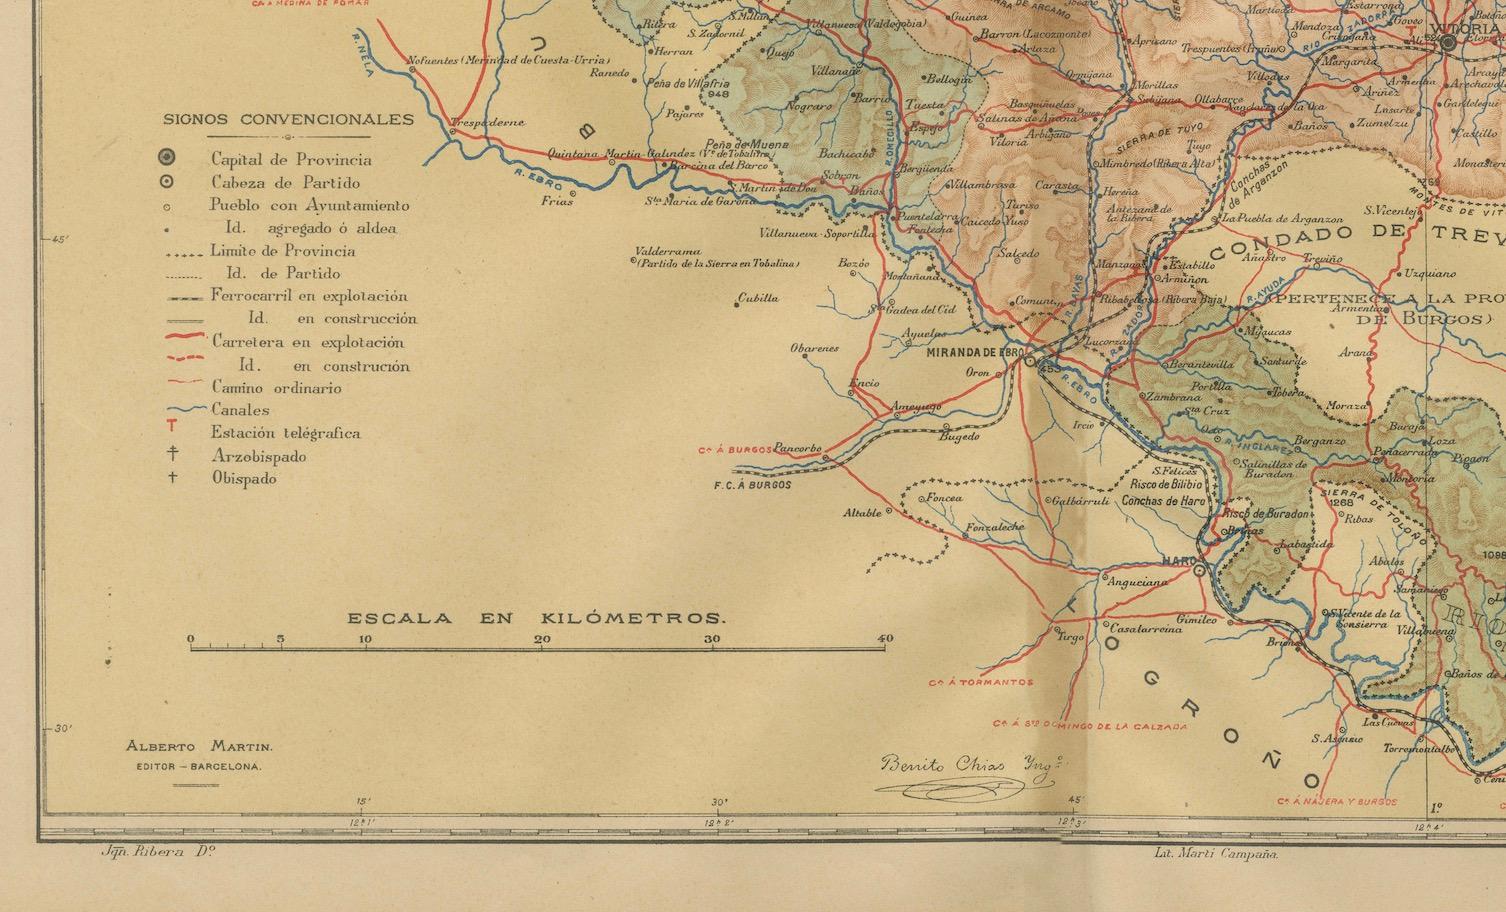 Bei dieser originalen antiken Karte handelt es sich um eine historische Darstellung der Provinz Álava (baskisch: Araba), die eine der Provinzen des Baskenlandes in Nordspanien ist, wie der Text 